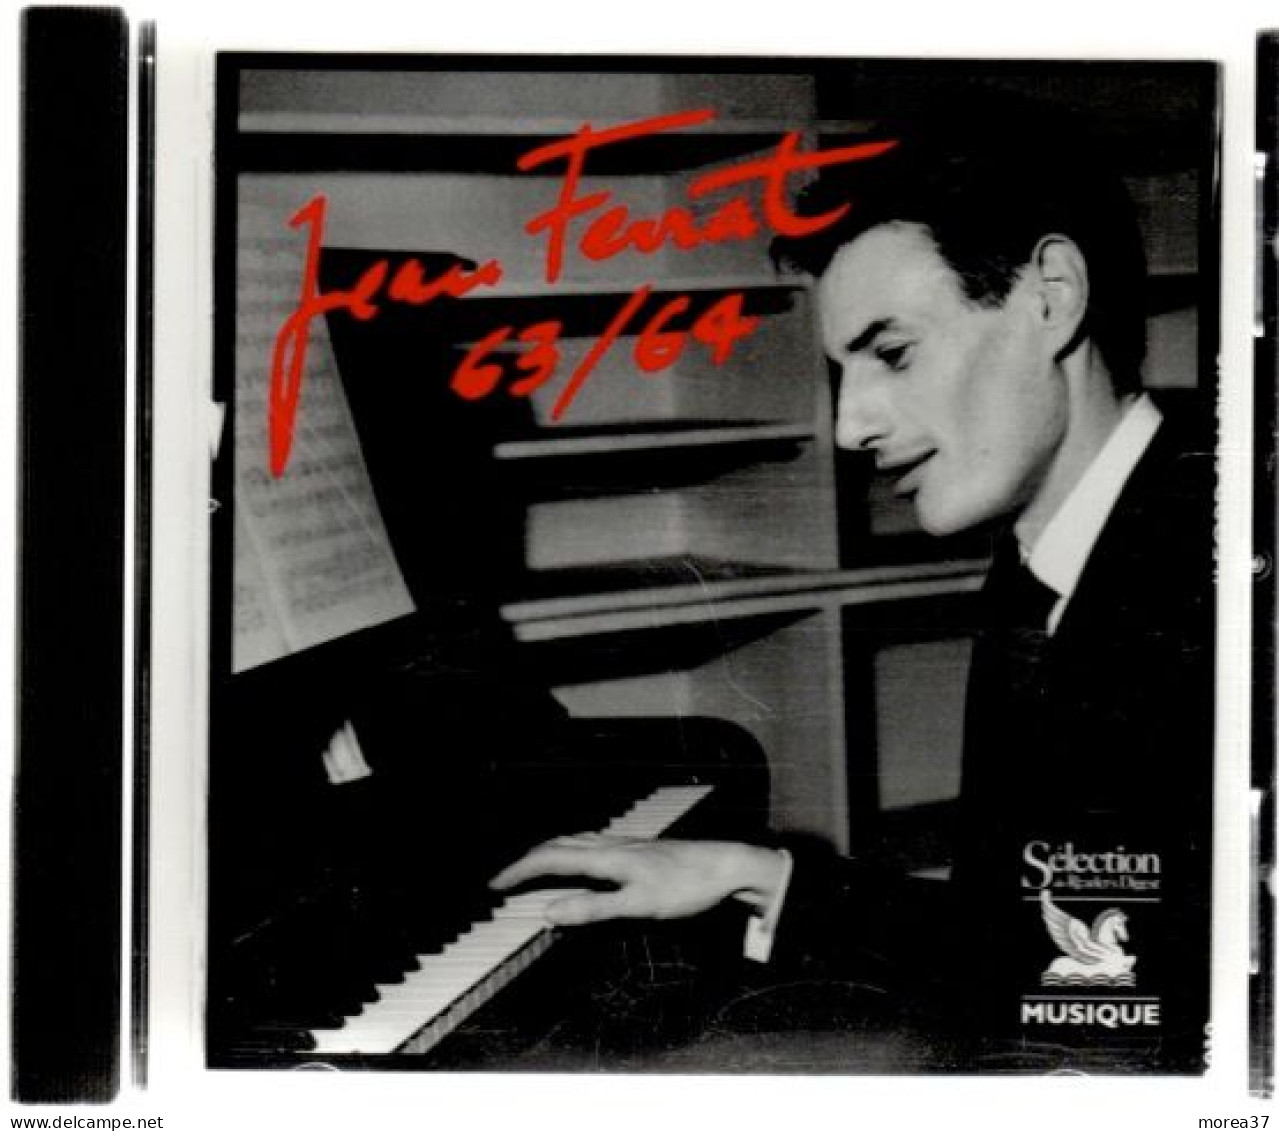 JEAN FERRAT  Coffret De 5 Cds     1961 / 1971      (ref CD2) - Other - French Music